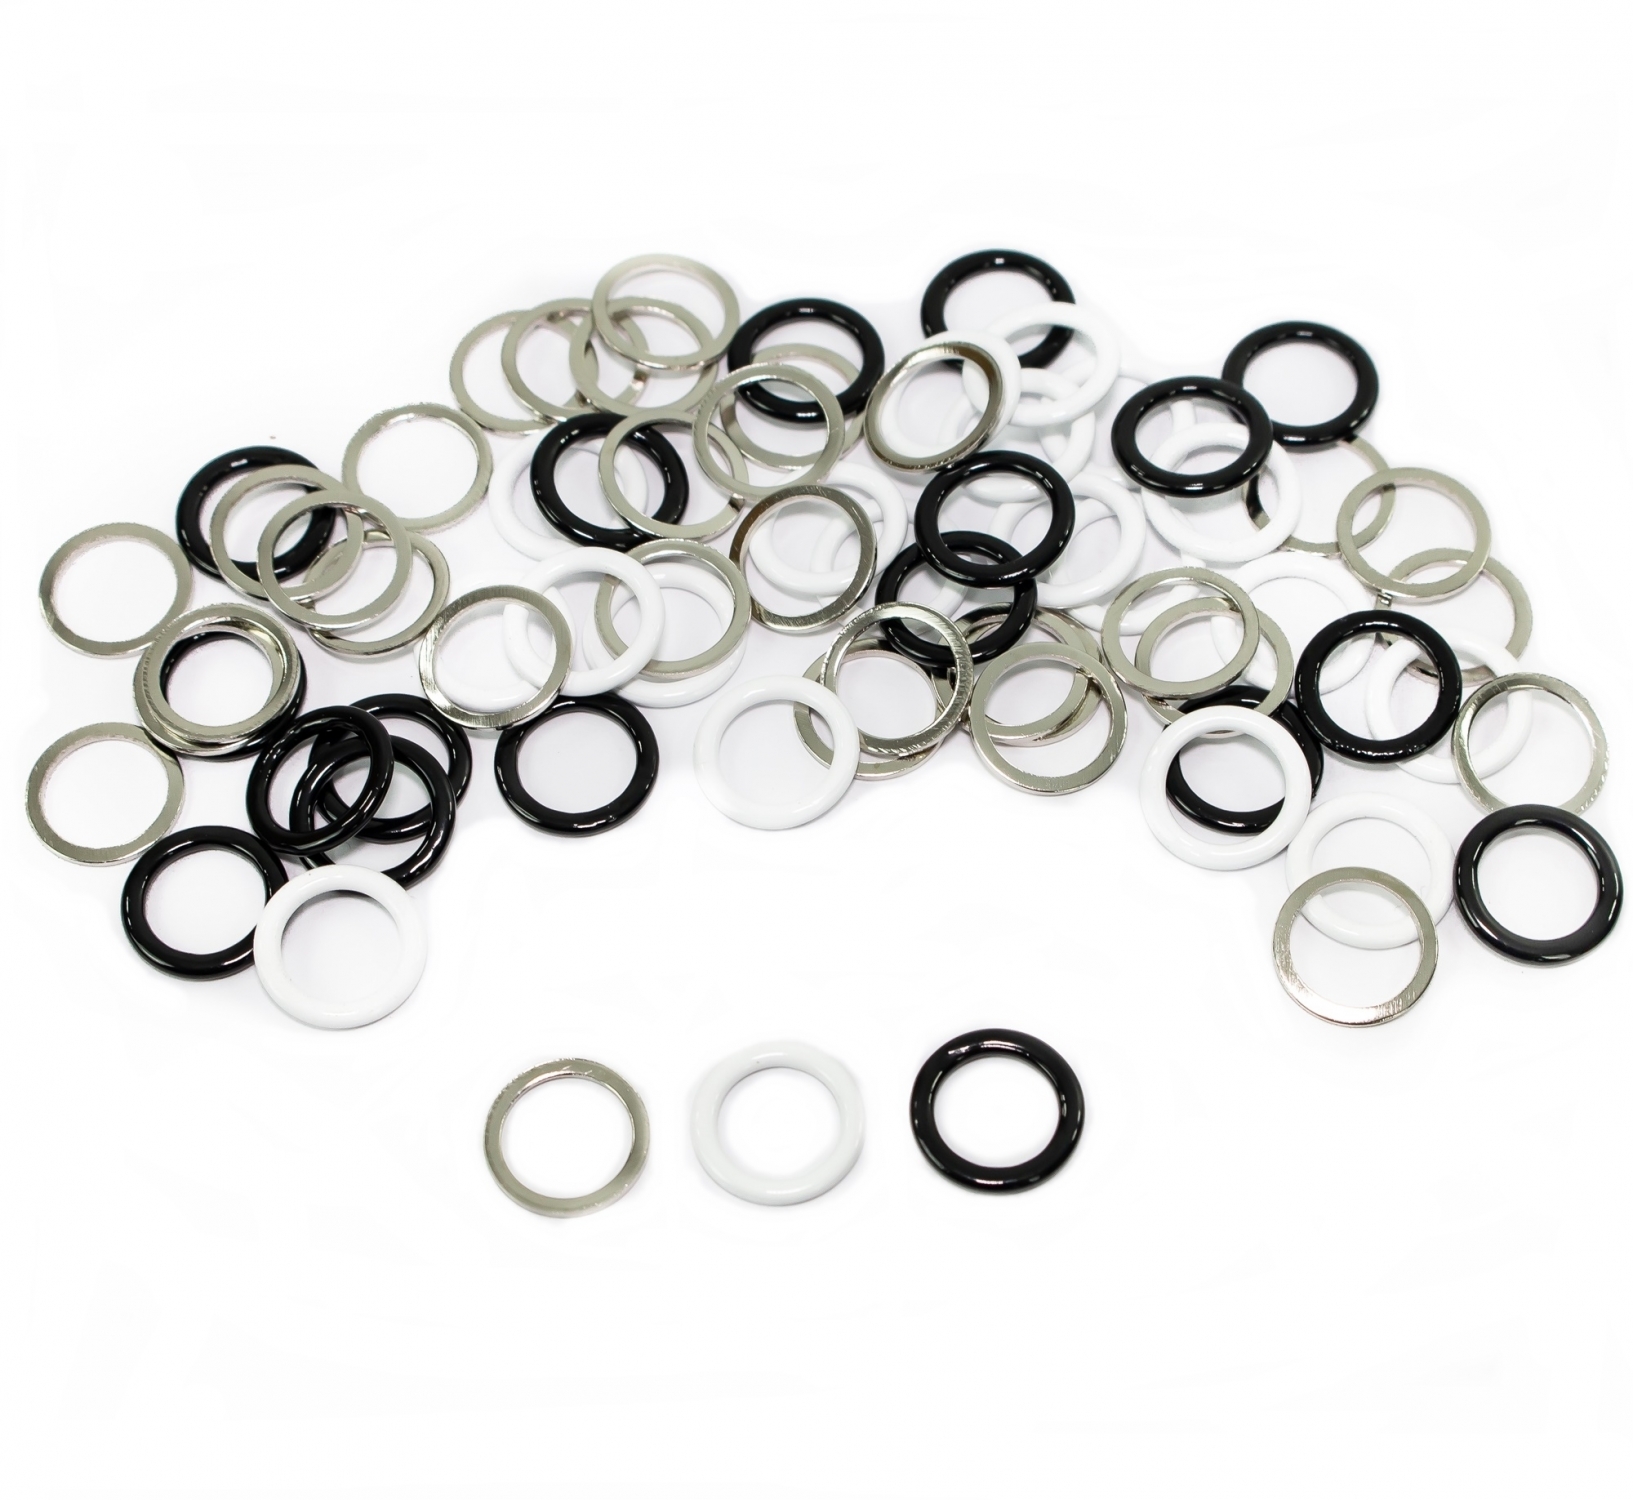 Metal Bra Rings, interior diameter 9 mm (100 pcs/bag)Cod: TK730